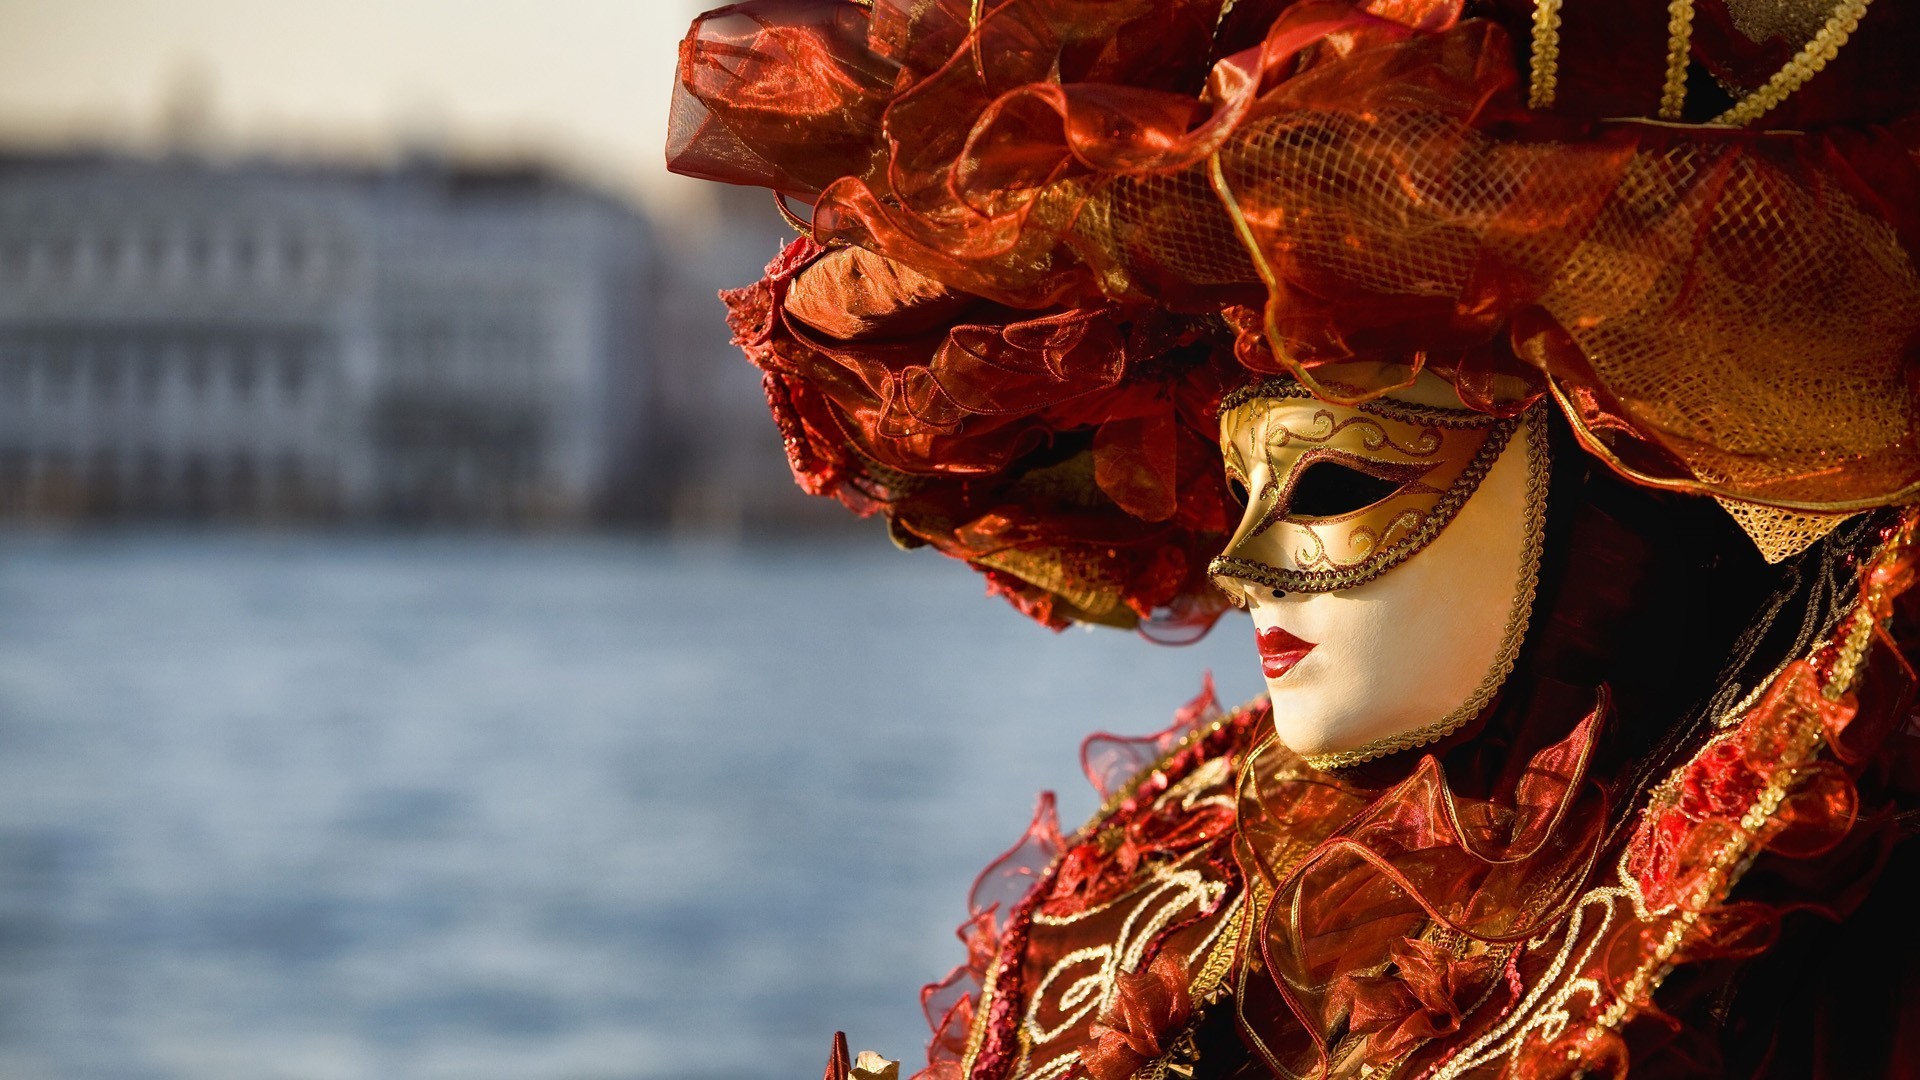 €820 - Тур Венецианский карнавал с перелетом, трансфером и экскурсионной программой